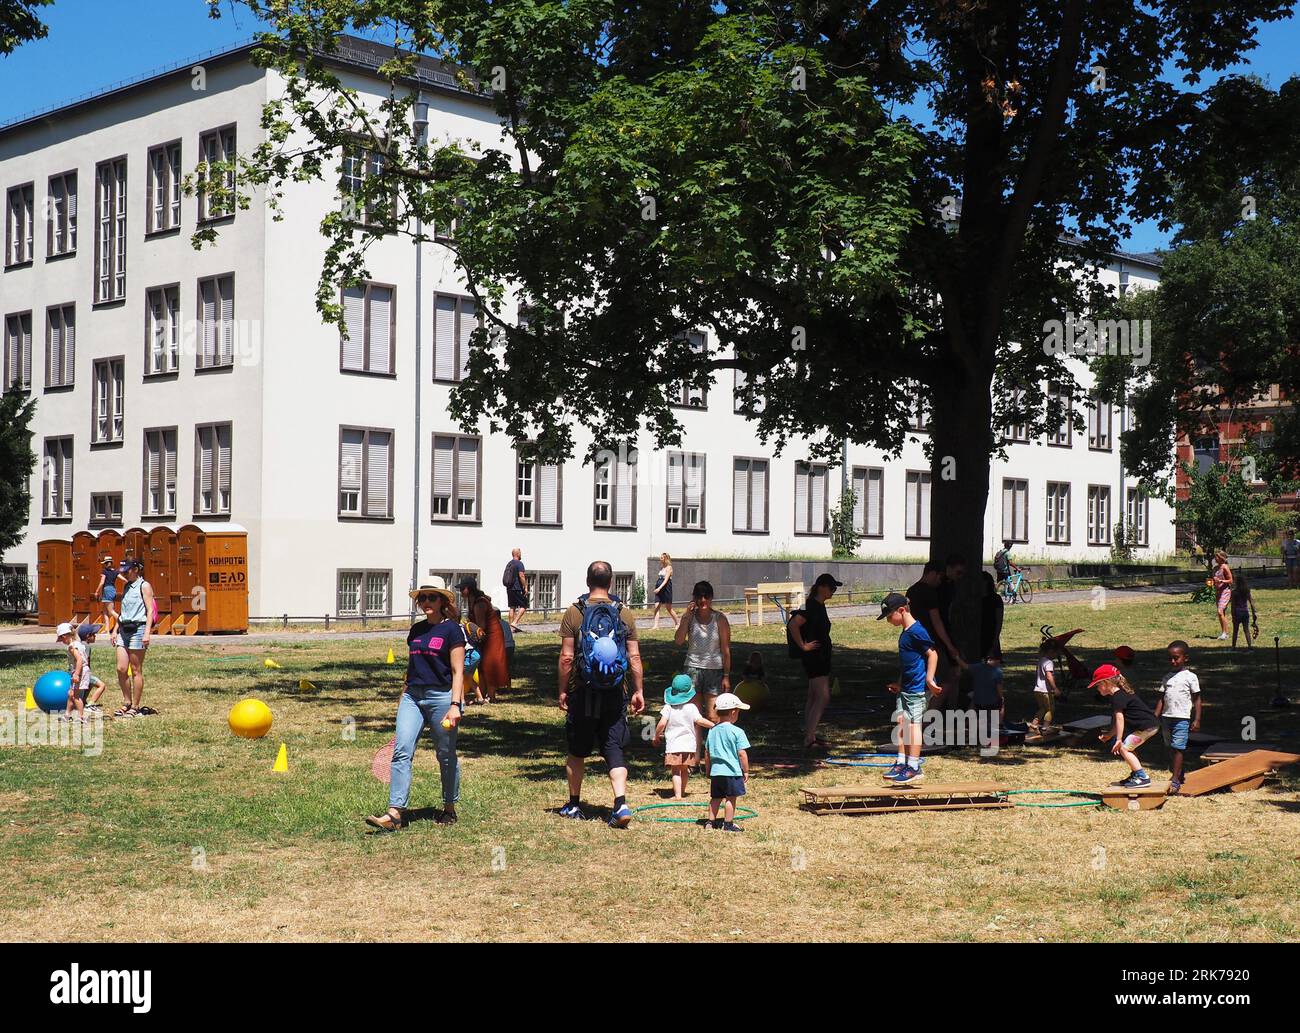 Eine vielfältige Gruppe von Menschen, die eine fröhliche Zeit in einem üppigen grünen Park in Darmstadt verbringen Stockfoto